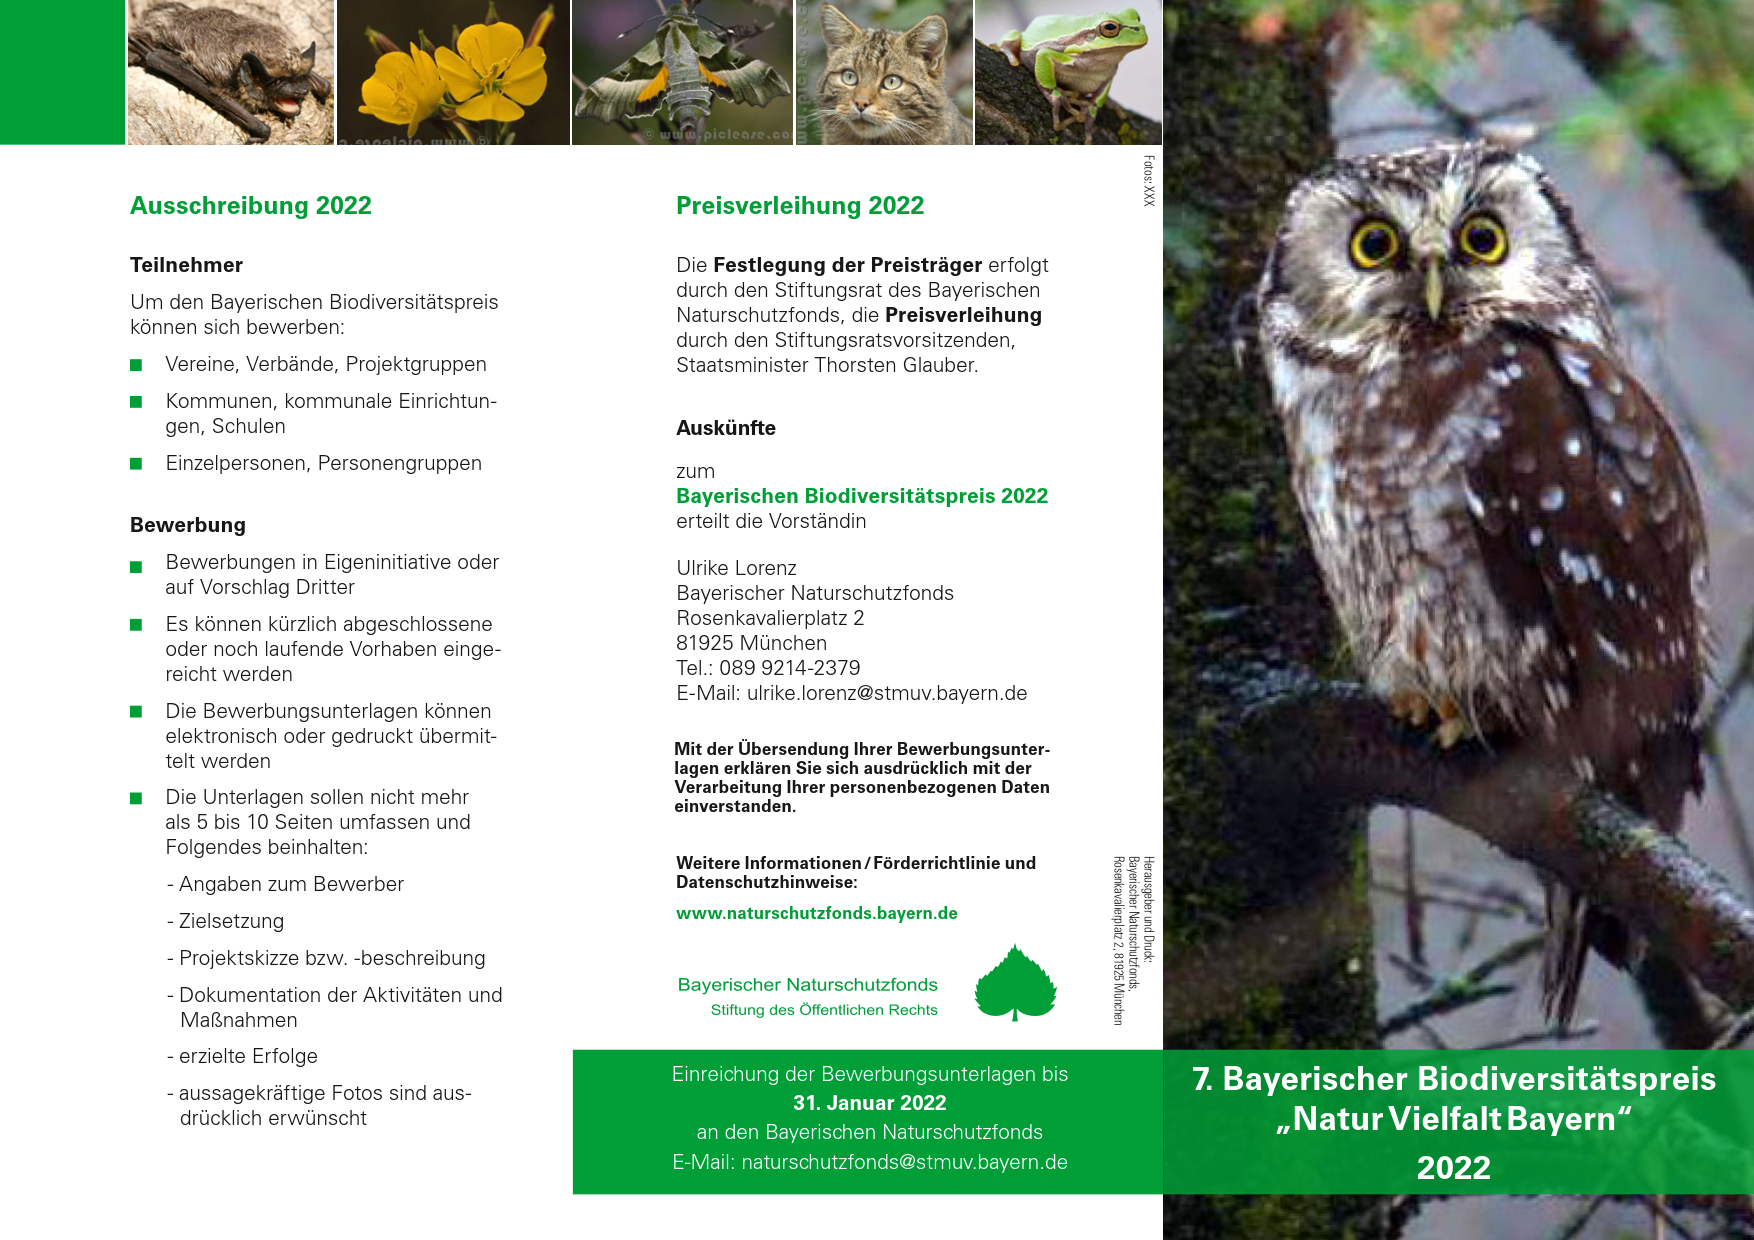 Bayerischer Biodiversitätspreis NaturVielfaltBayern 2022